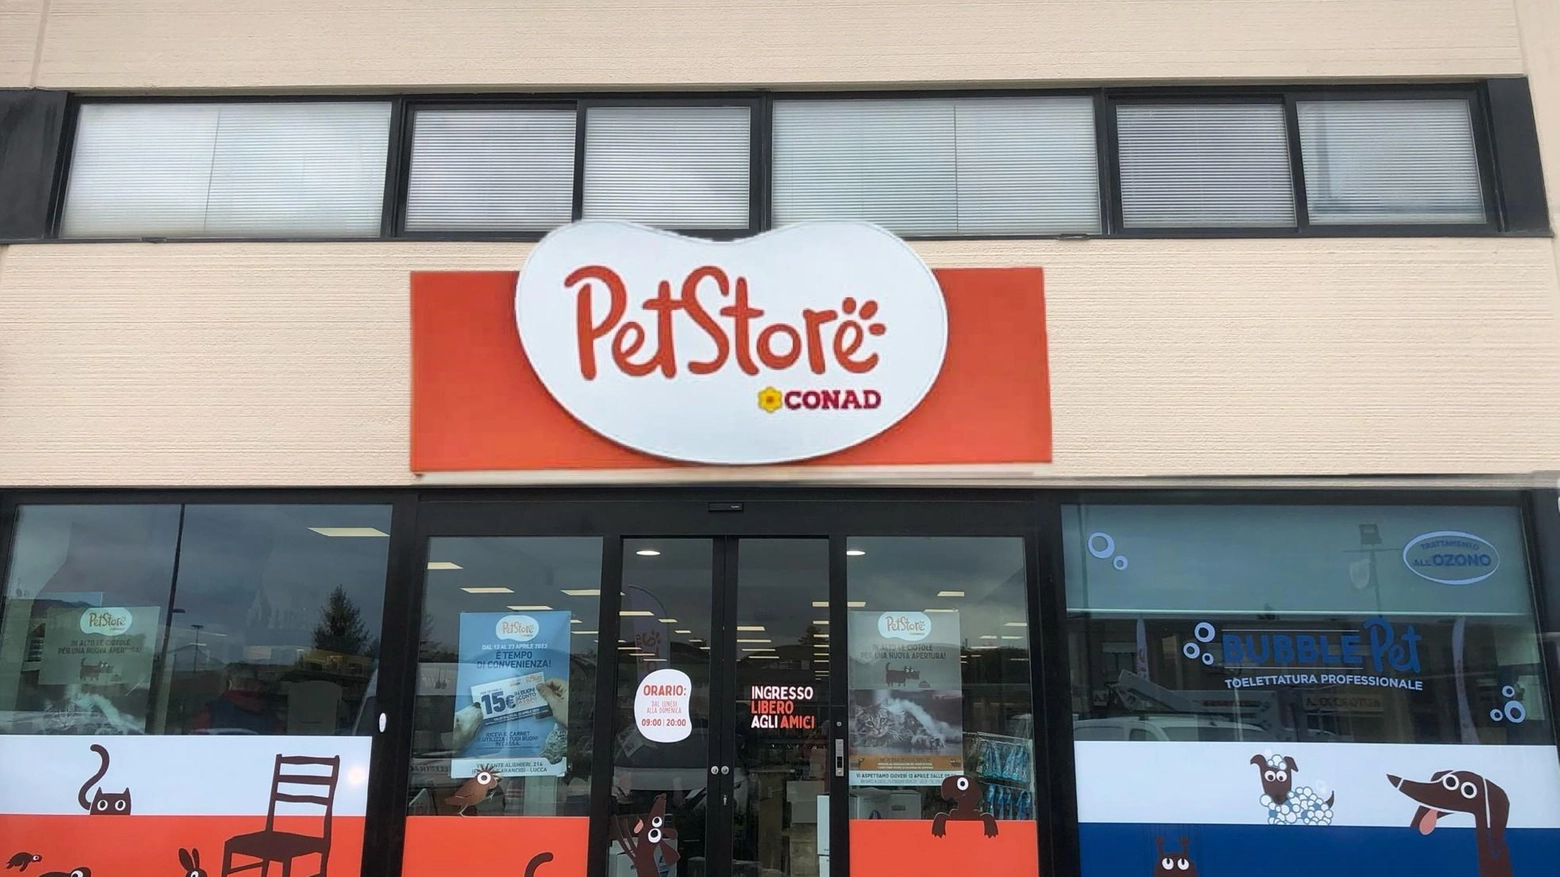 Inaugura il PetStore a marchio Conad  Prodotti e servizi, lavanderia e tolettatura